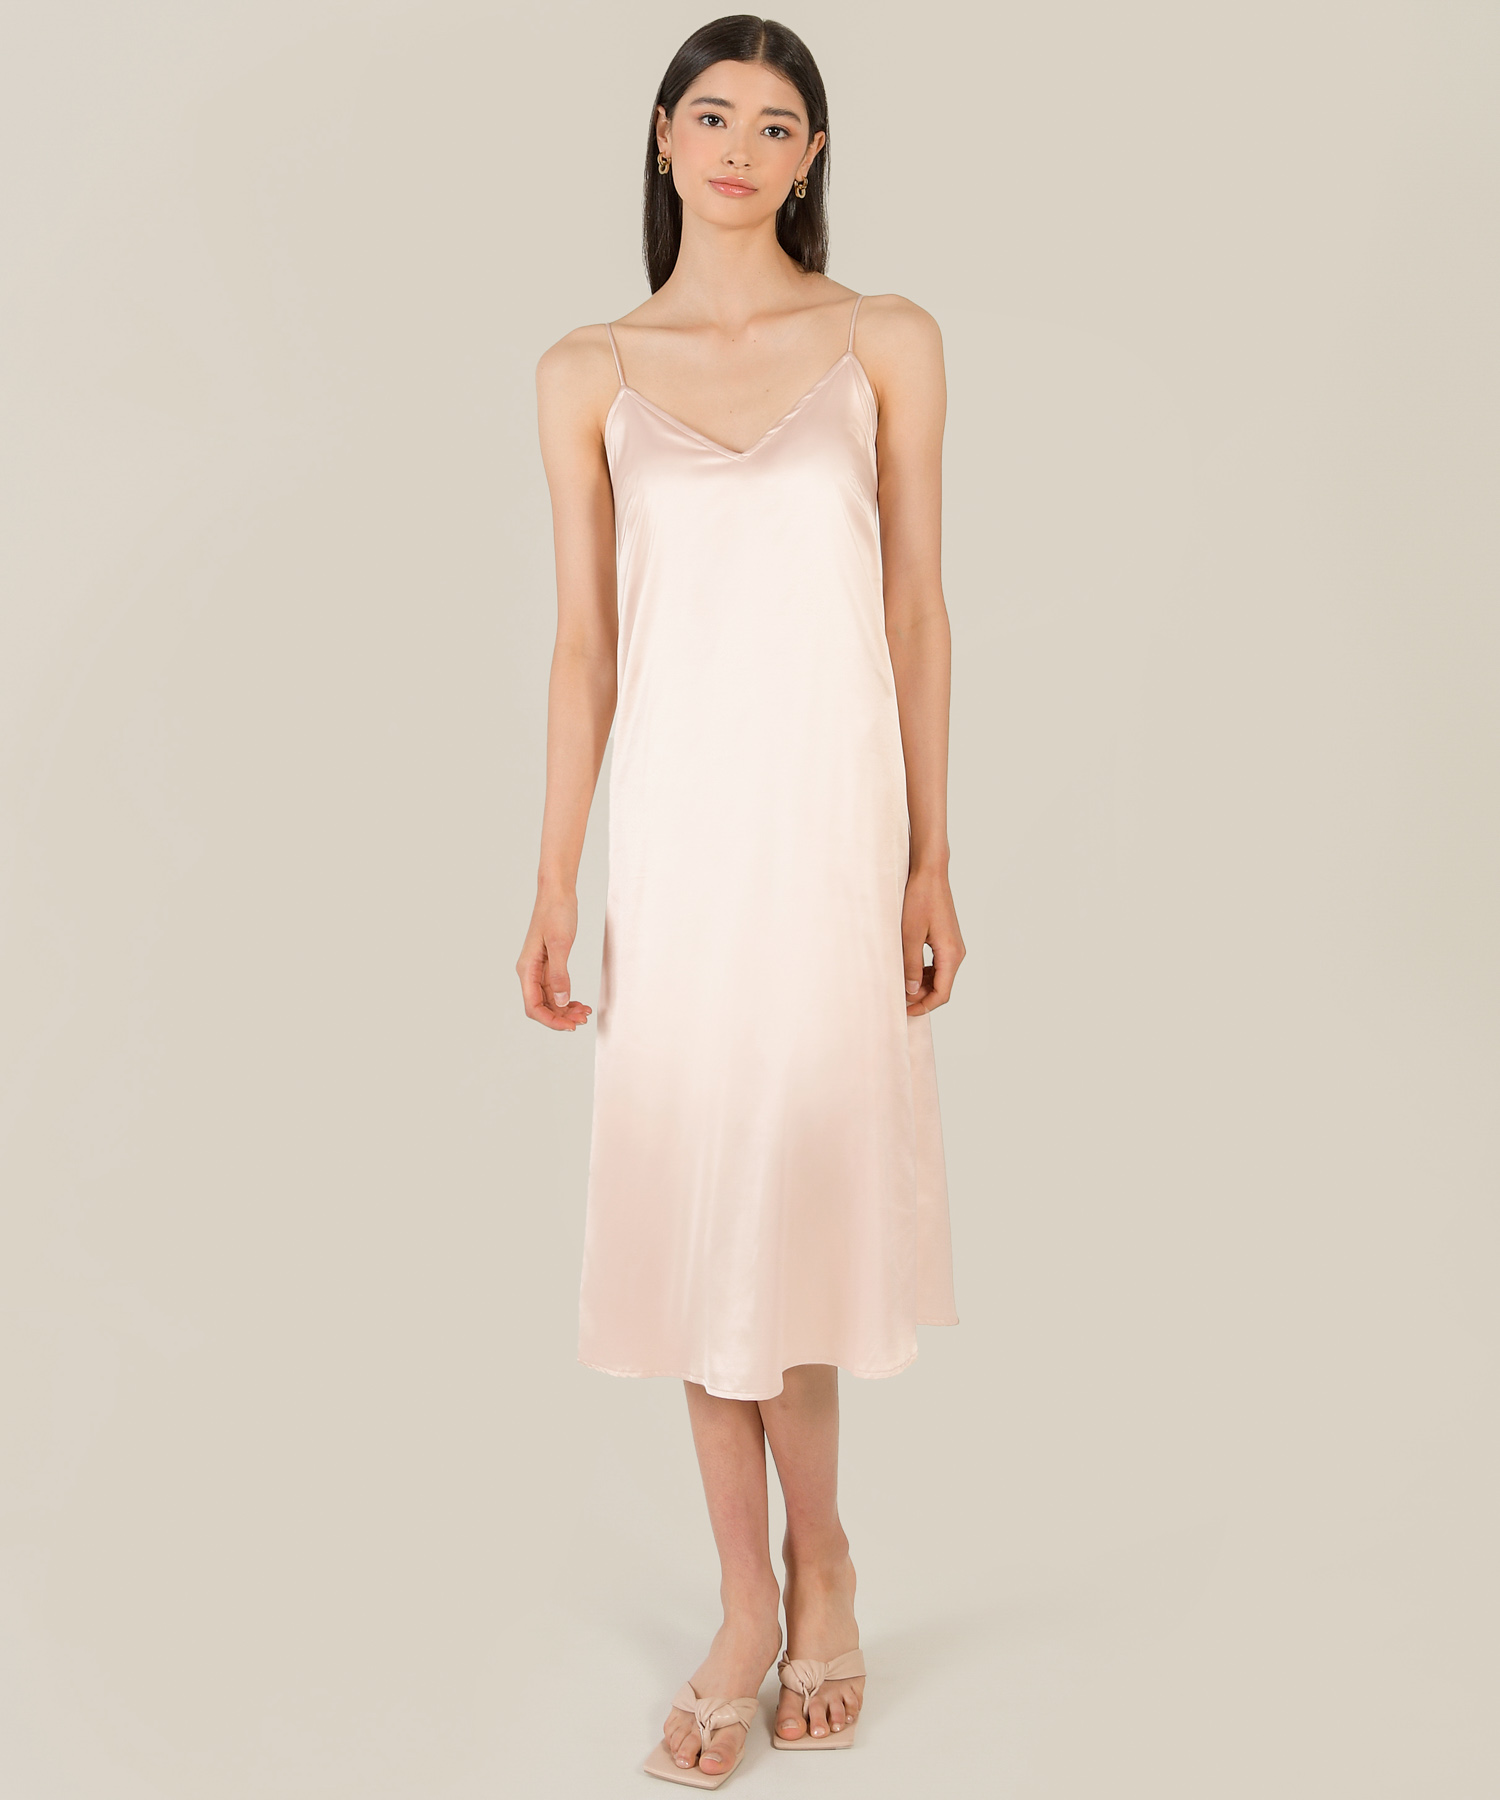 sanctuaire champagne pink satin chemise women's dress online